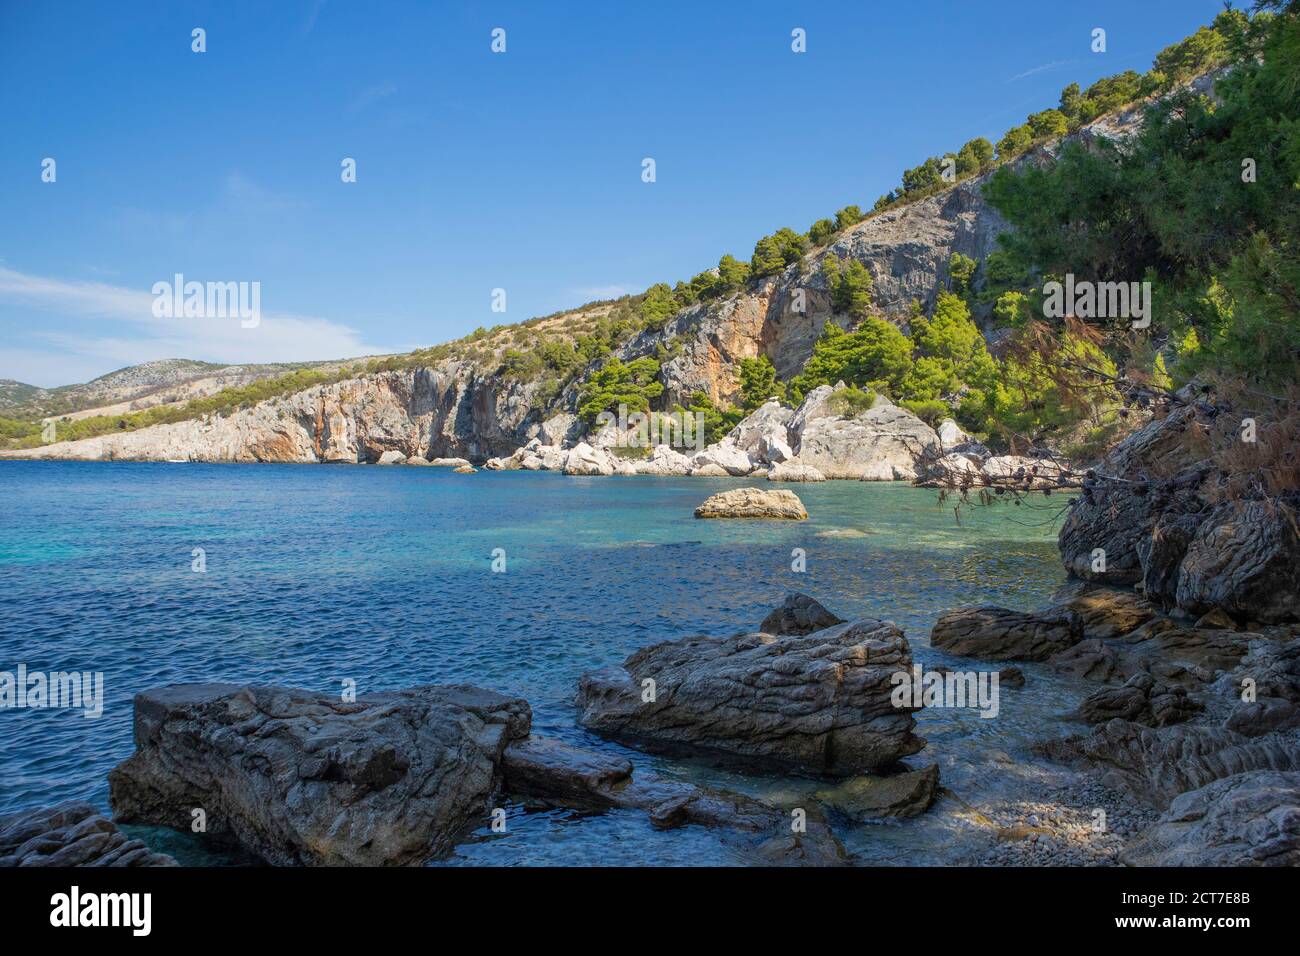 Magnífico paisaje natural de la popular playa de 'Zarace' en la isla de Hvar, destino turístico popular en el mar Adriático, rodeado de escarpada, rocosa cl Foto de stock